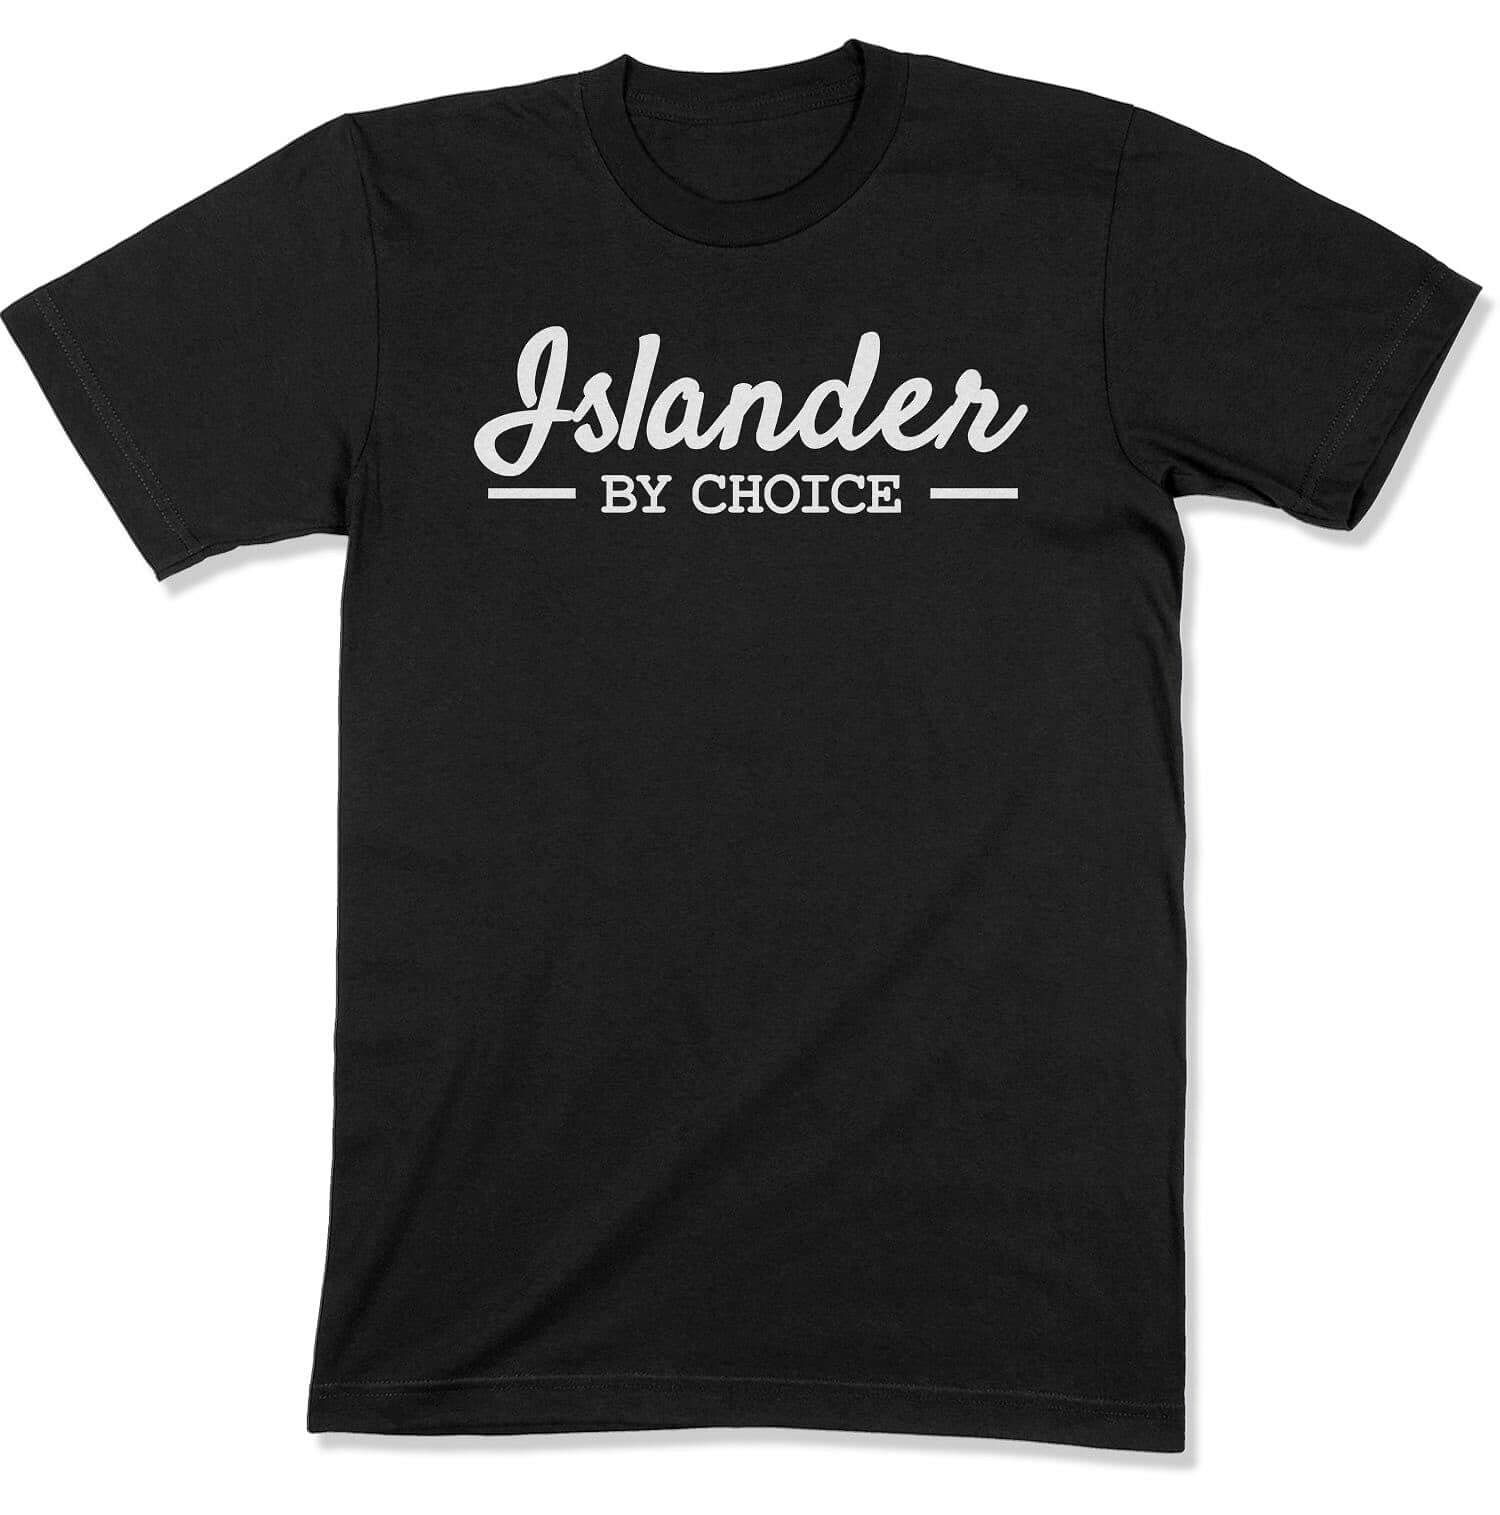 Islander by Choice Unisex T-Shirt-East Coast AF Apparel